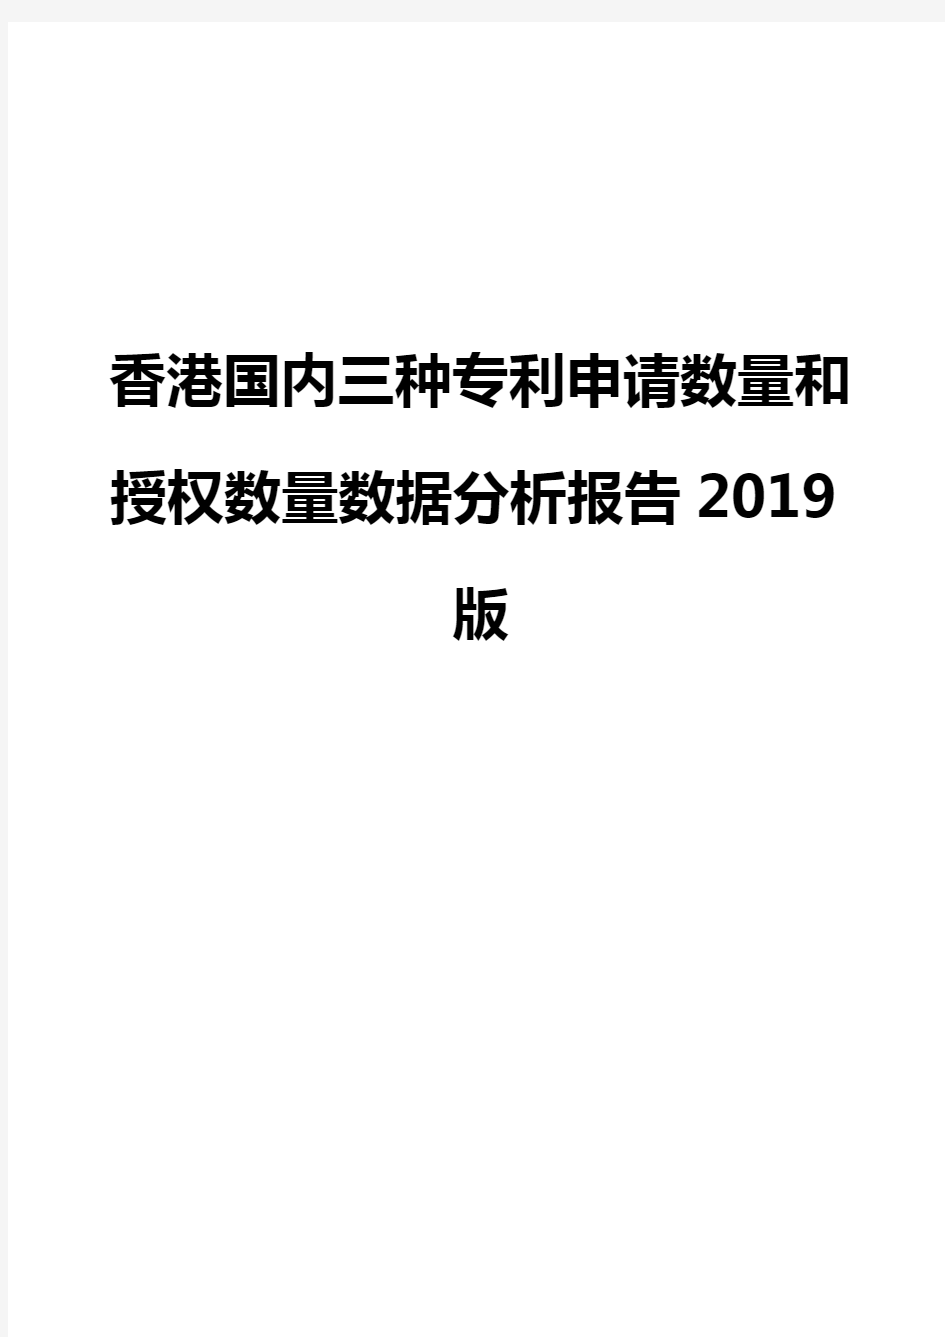 香港国内三种专利申请数量和授权数量数据分析报告2019版